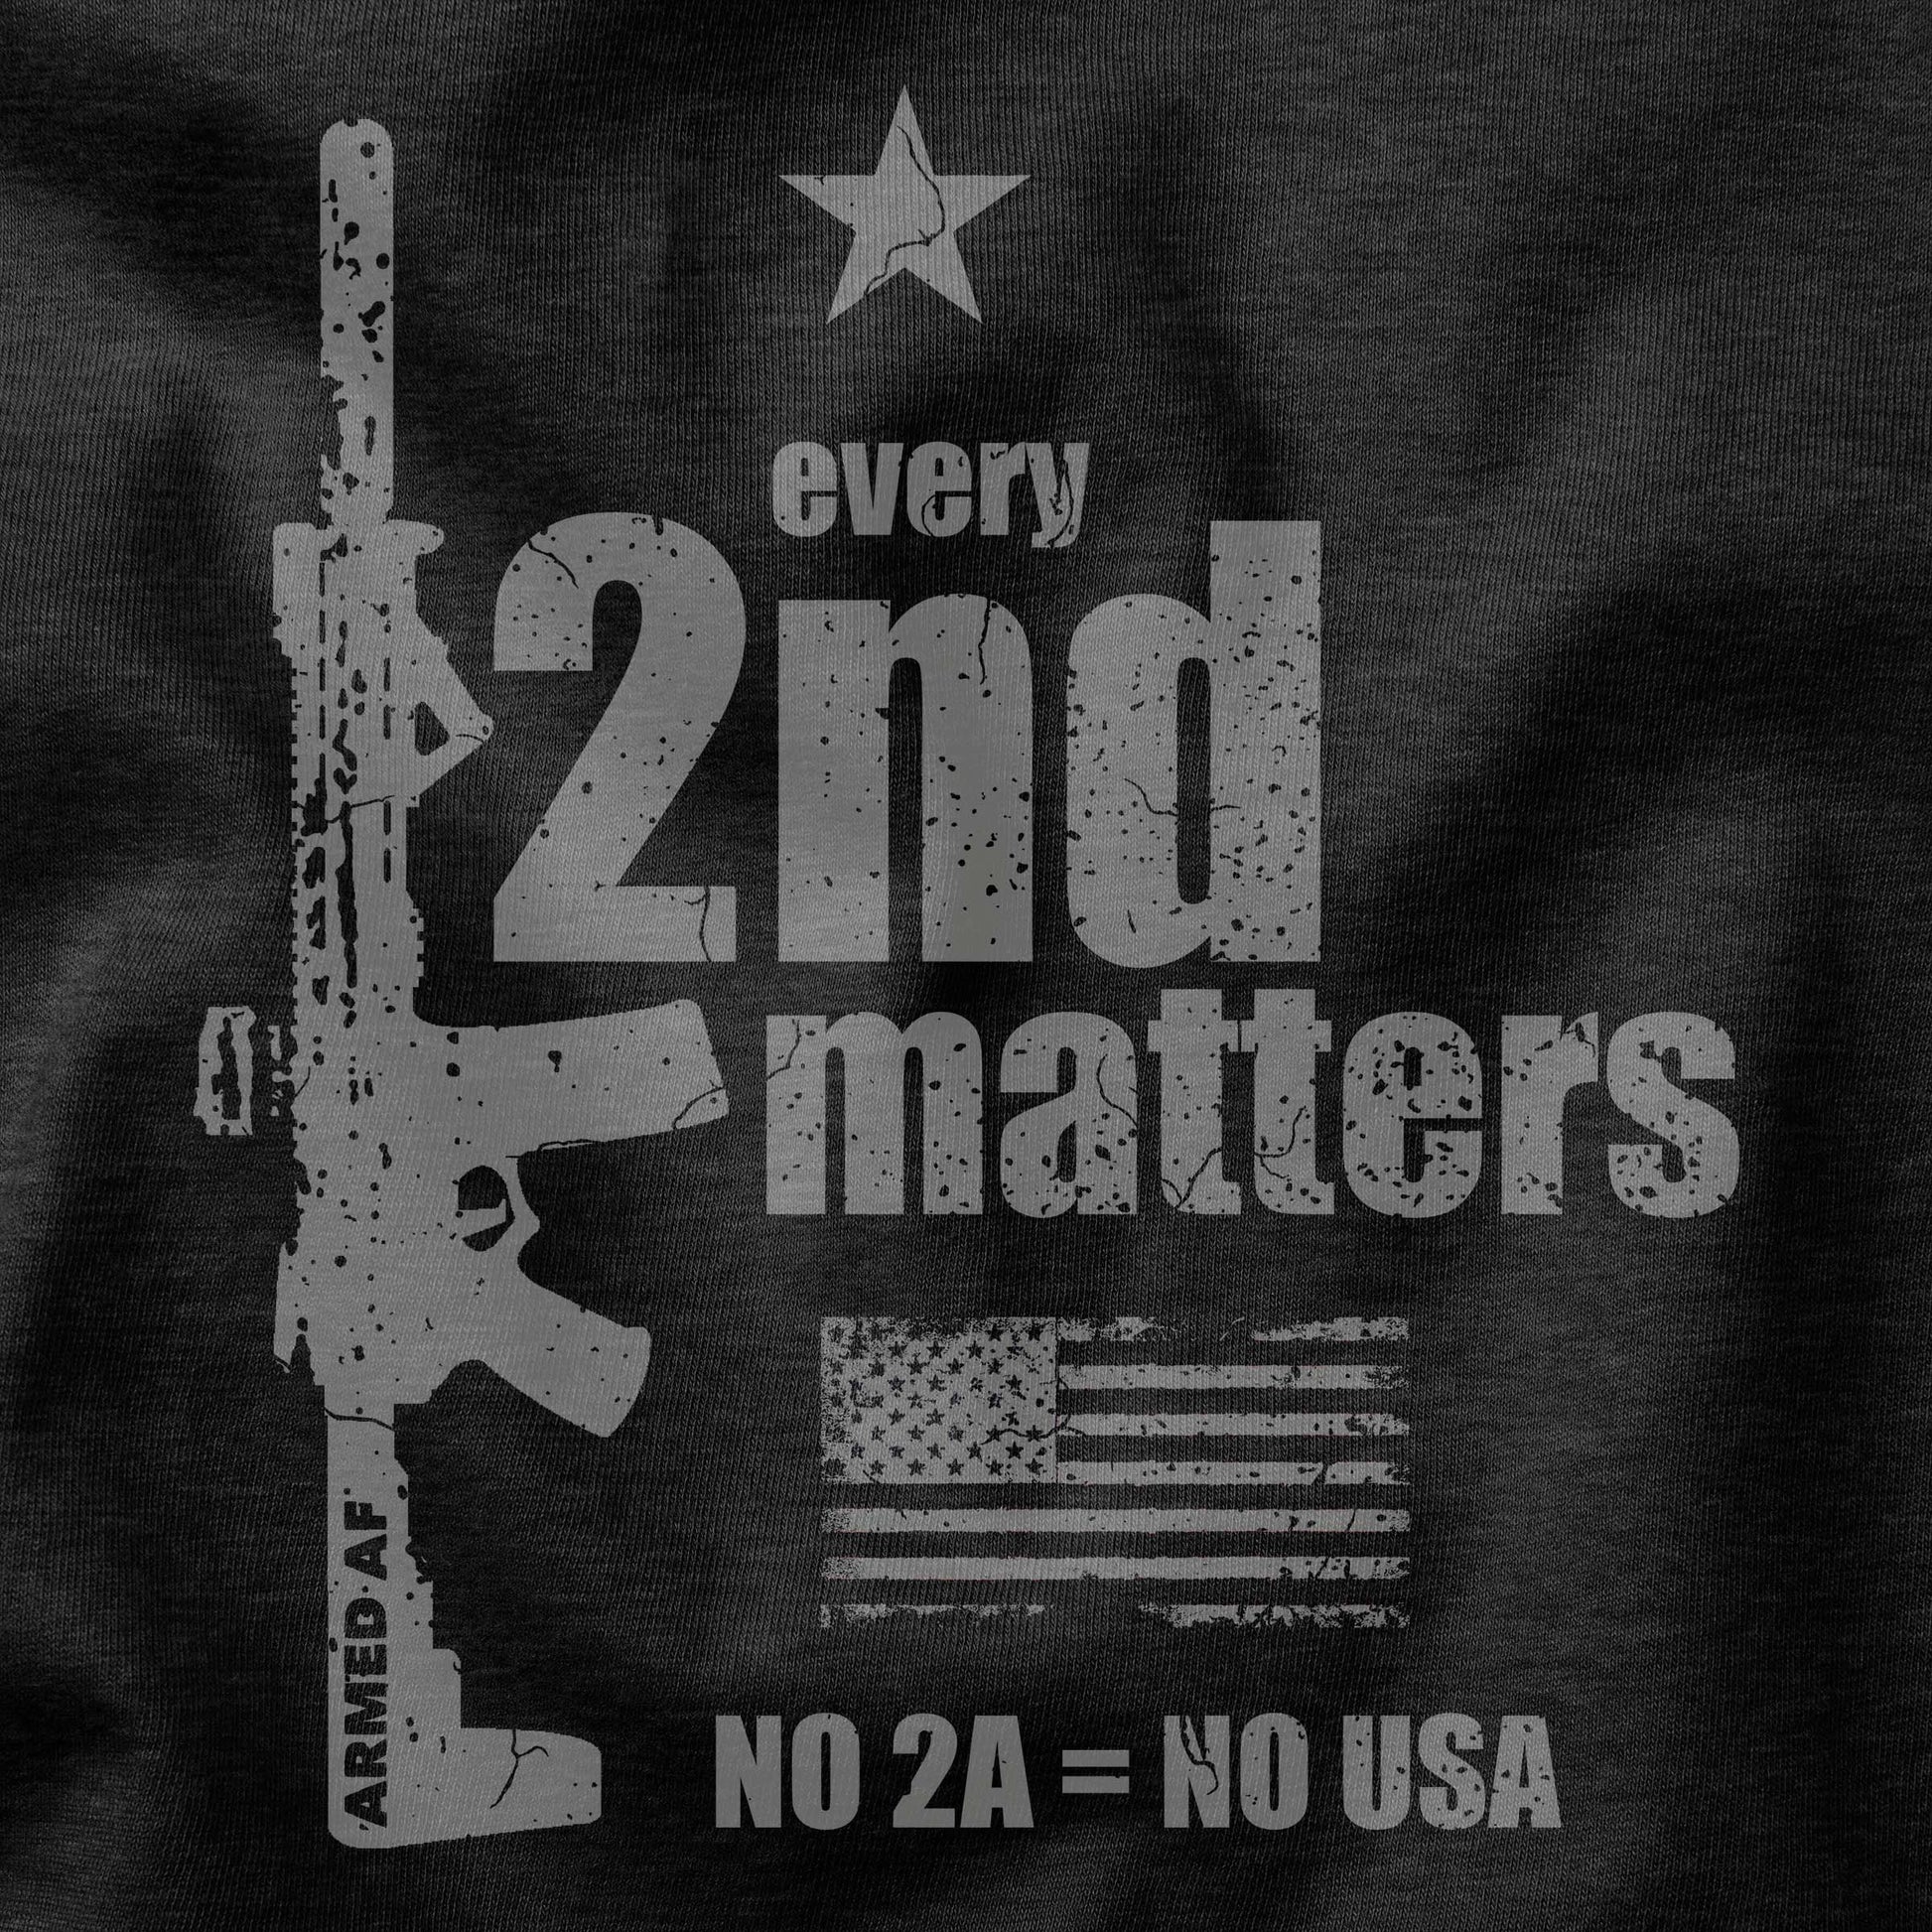 Every Second Matters Second amendment t-shirt design